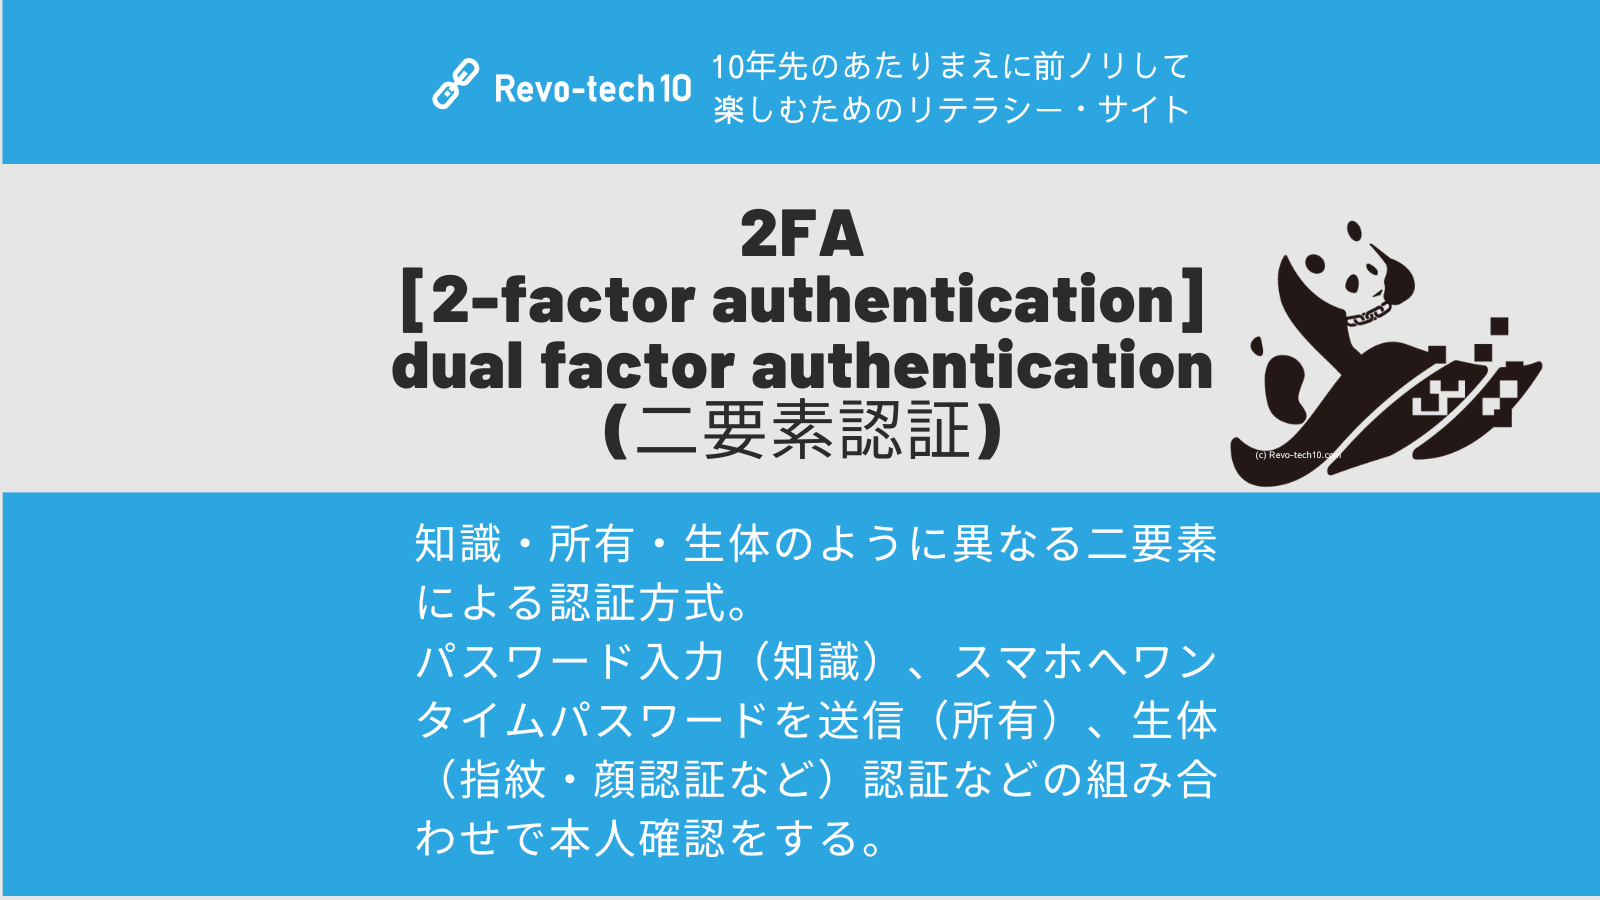 0075_2FA [2-factor authentication] (二要素認証)とは、知識・所有・生体のように異なる二要素による認証方式。